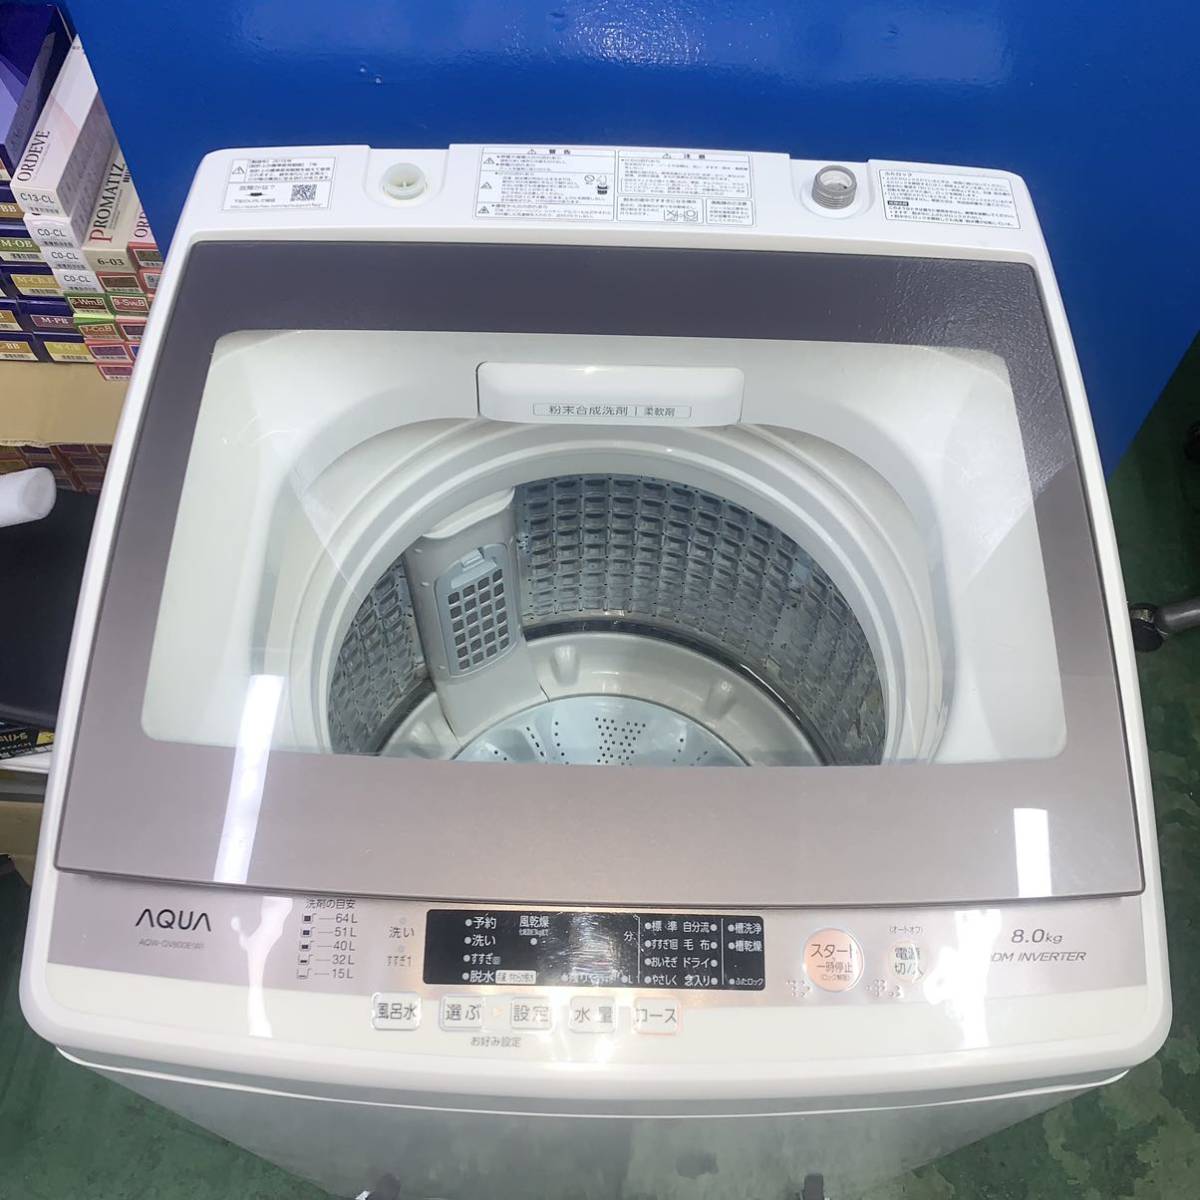 ⭐️AQUA⭐️全自動洗濯機 2018年8kg 大阪市近郊配送無料-